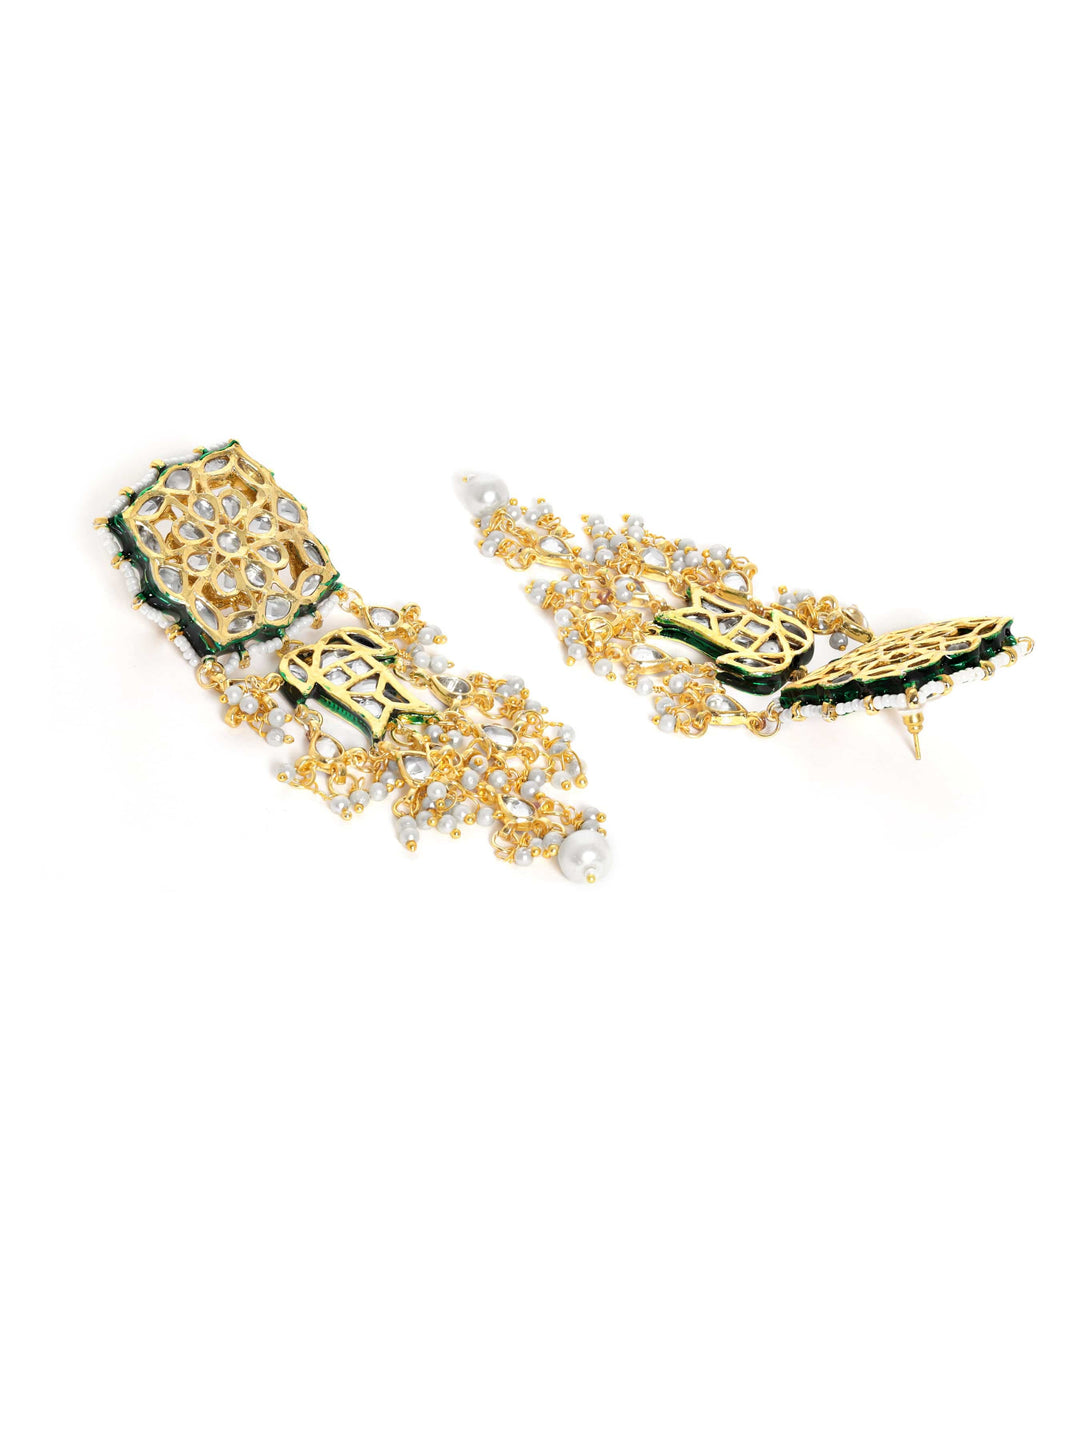 Rubans Gold Plated Kundan Choker Set With White Beads Necklace Set